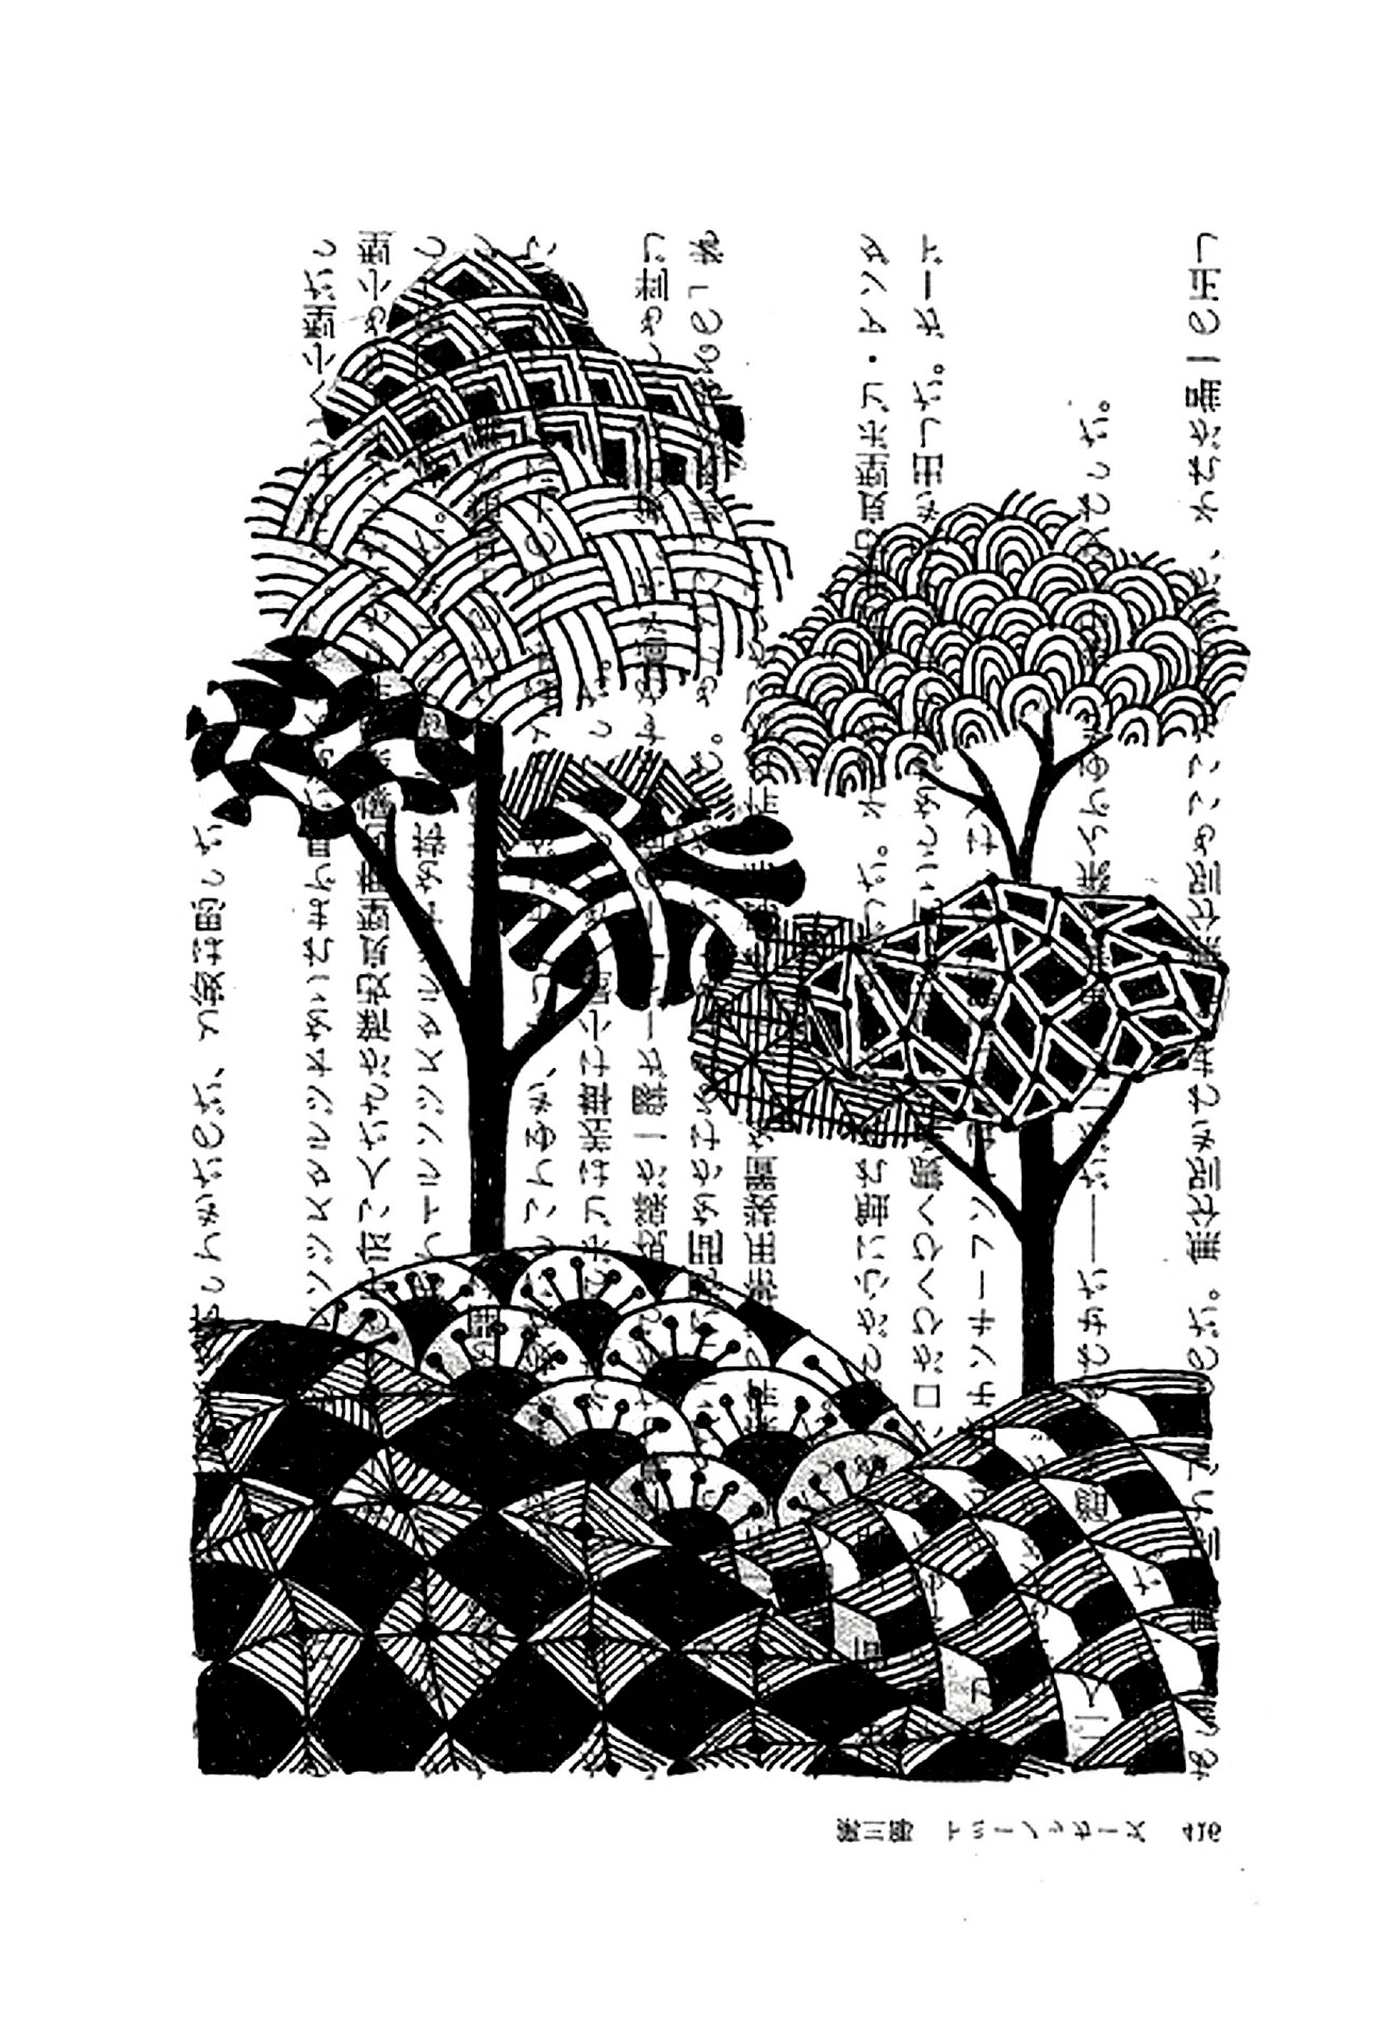  Árboles con escritos japoneses 